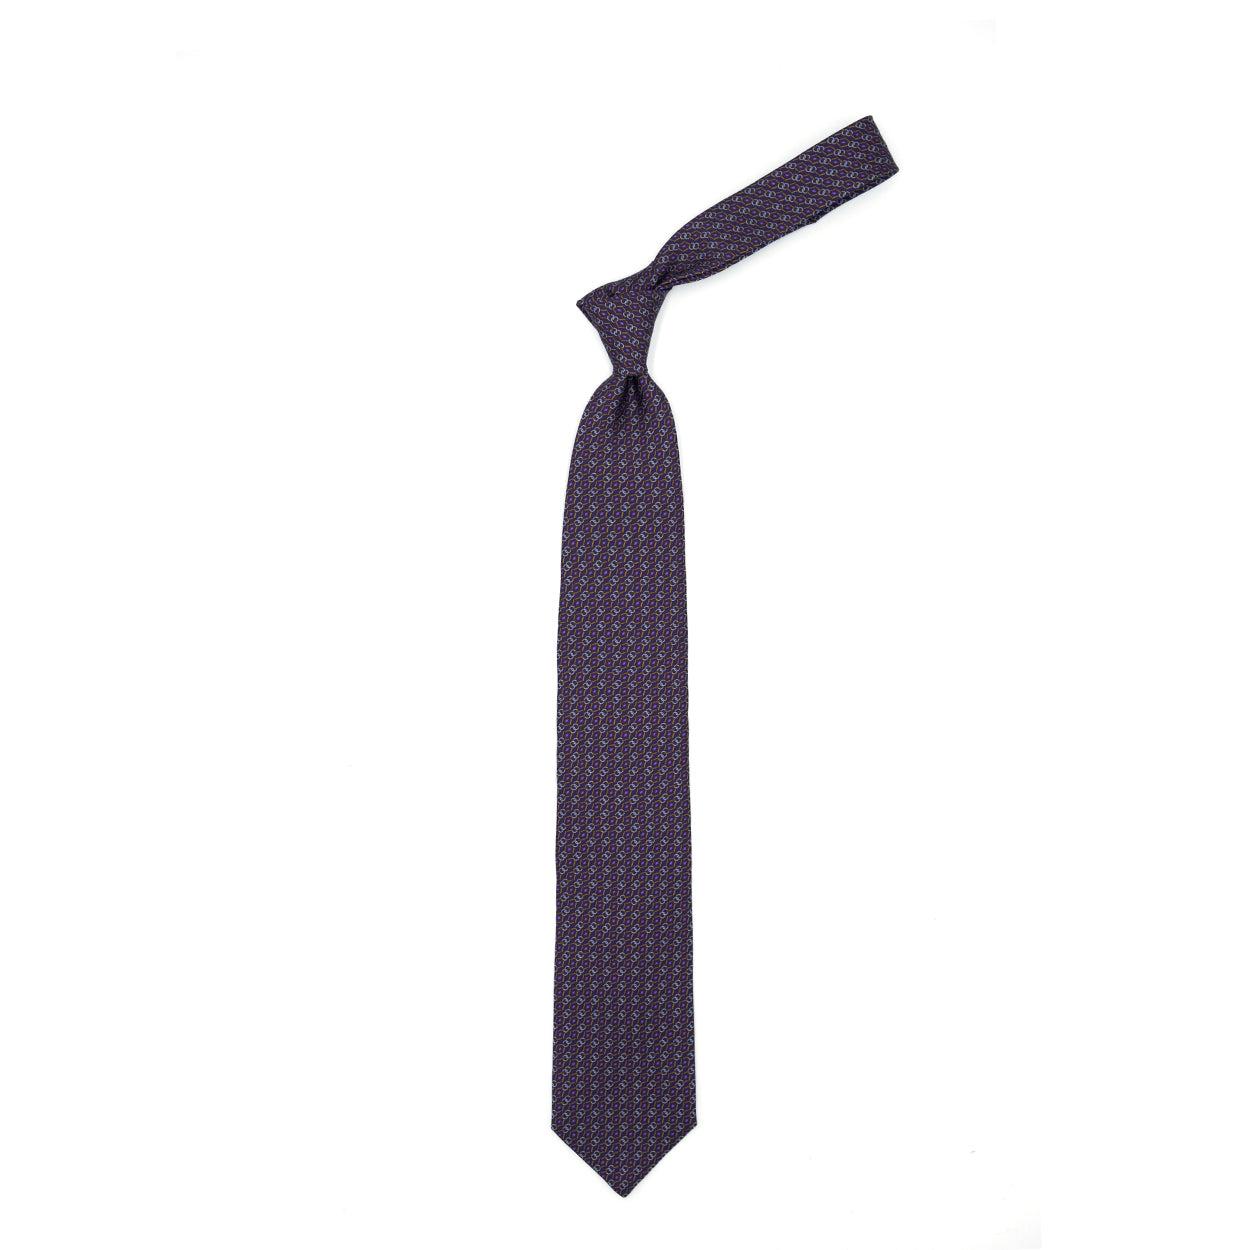 Cravatta viola con pattern astratto